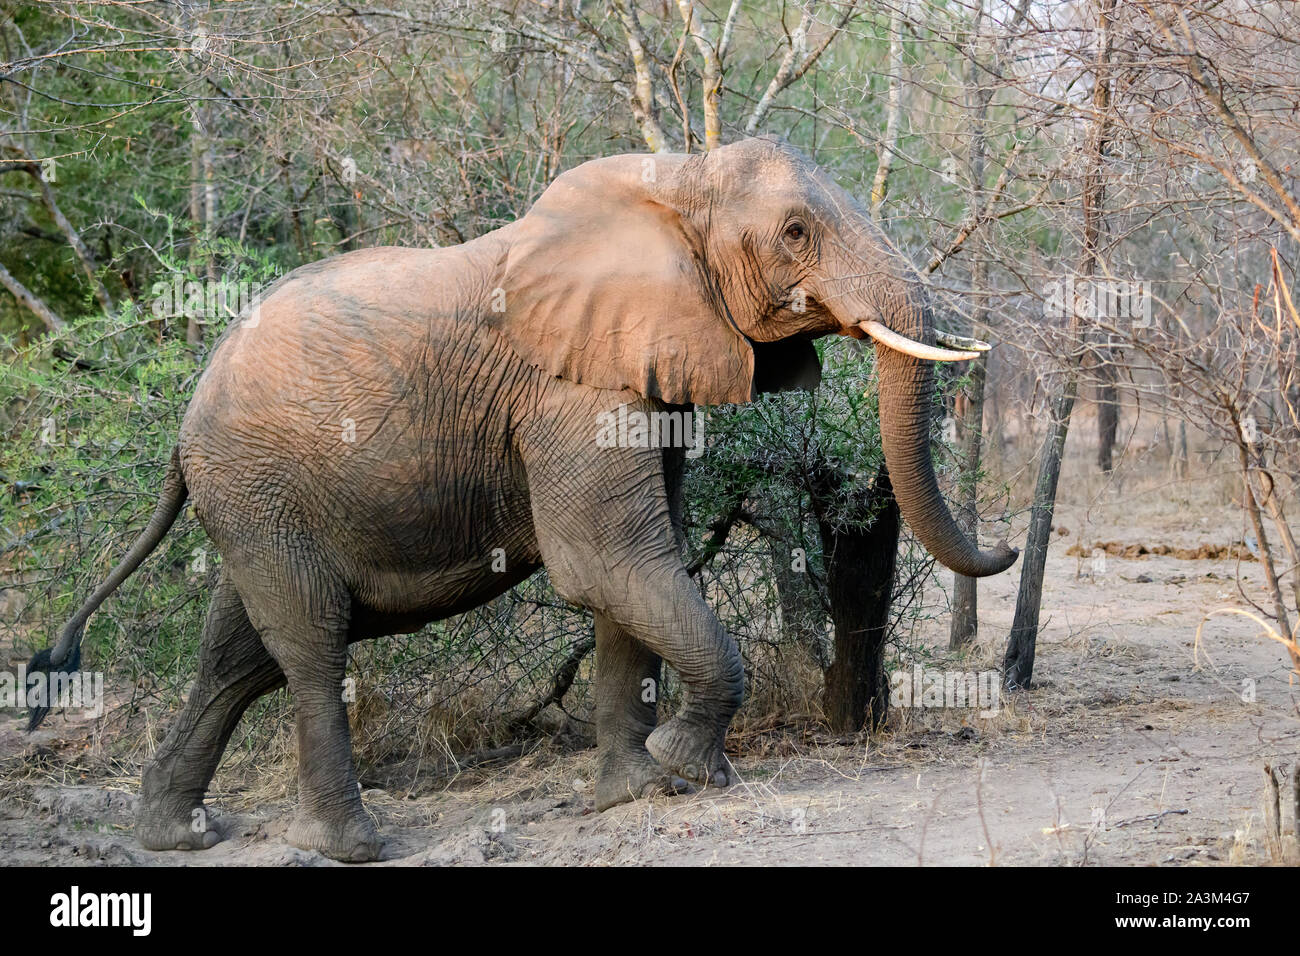 Elefante africano en estrecha proximidad pasando el vehículo de safari Foto de stock